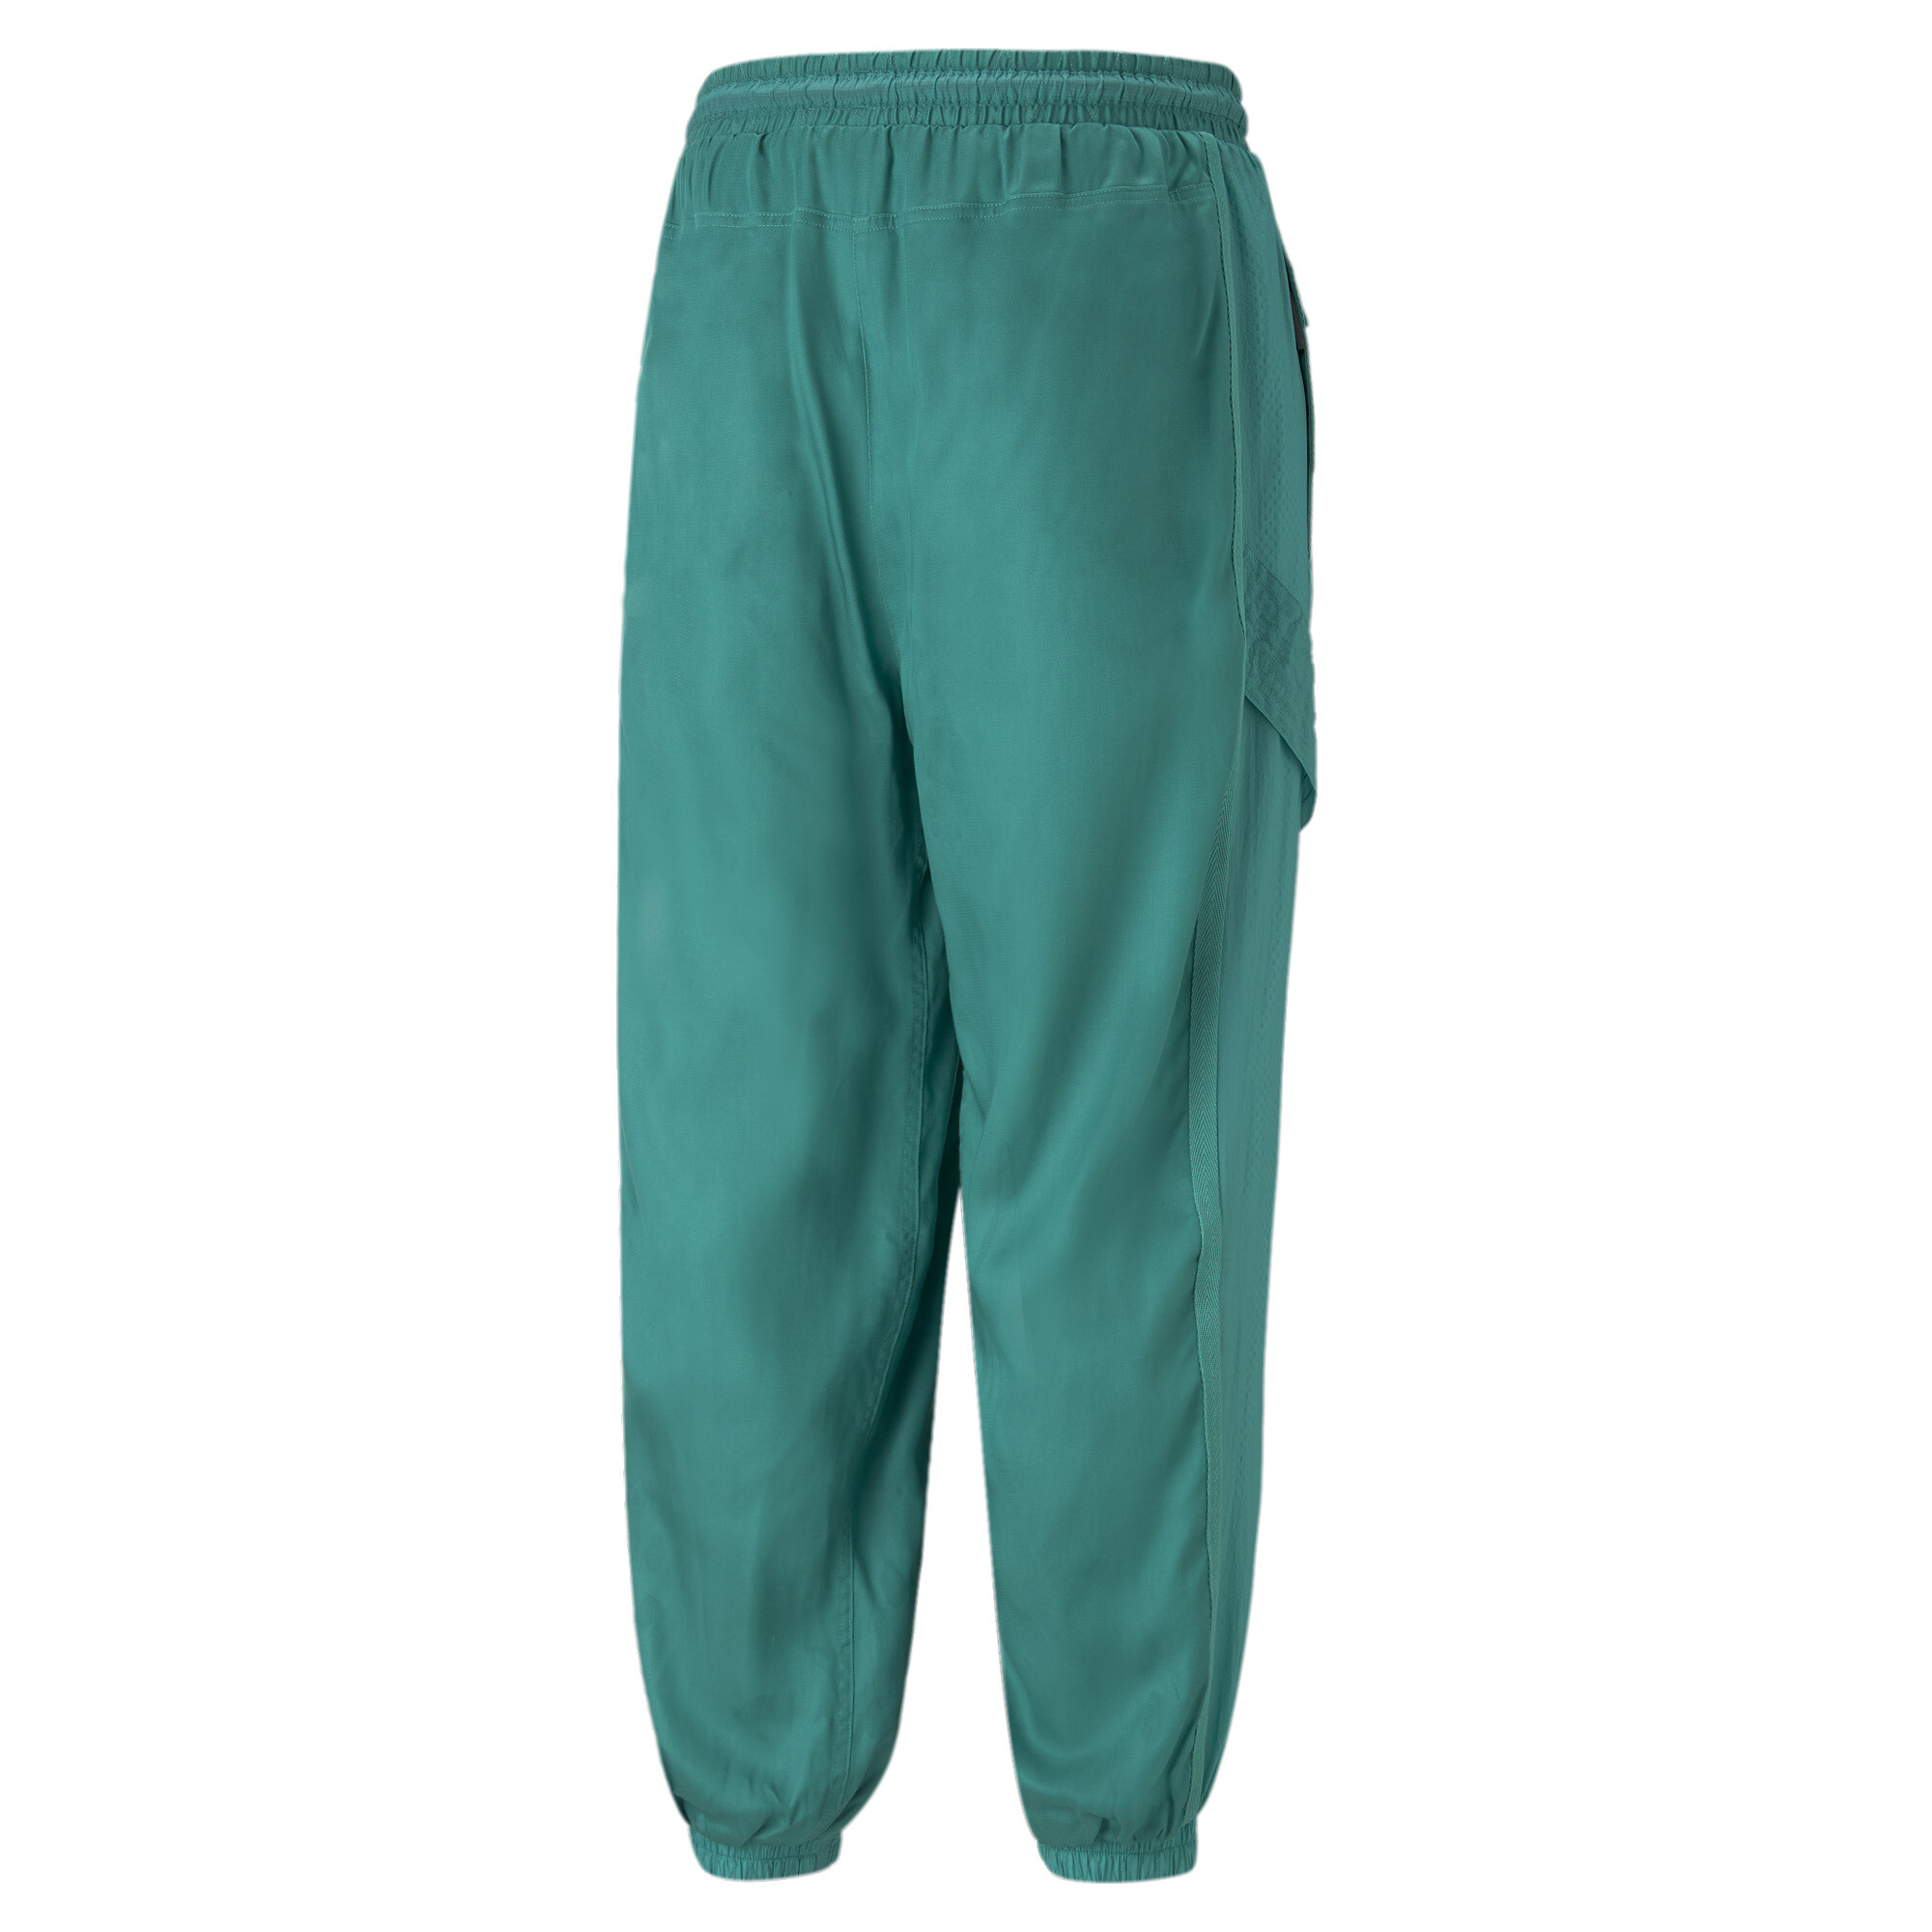 Men's PUMA X KOCHÃ Reversible Pants In Green, Size Large